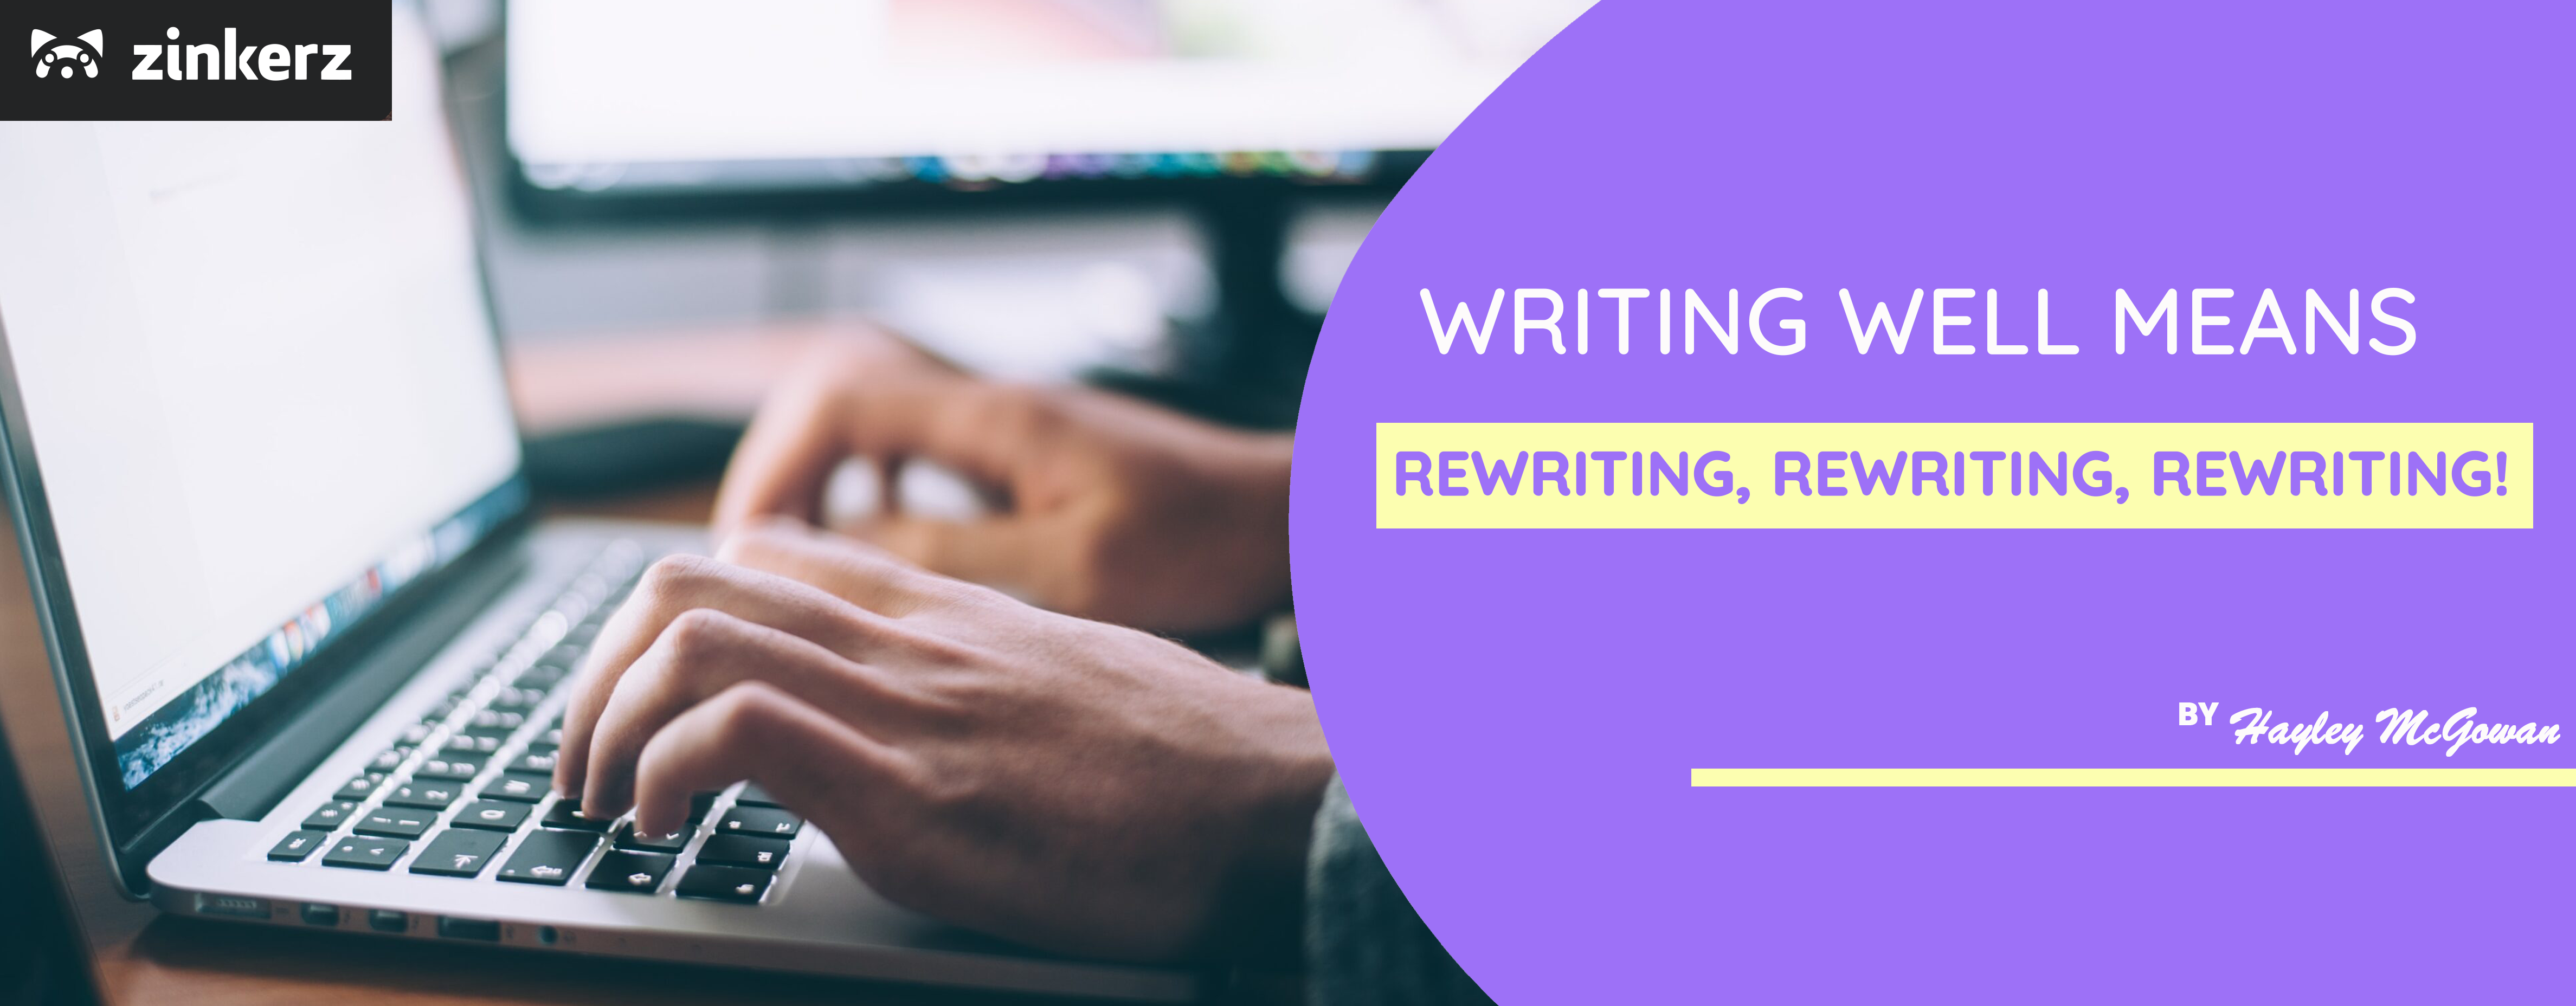 Writing Well Means Rewriting, Rewriting, Rewriting!